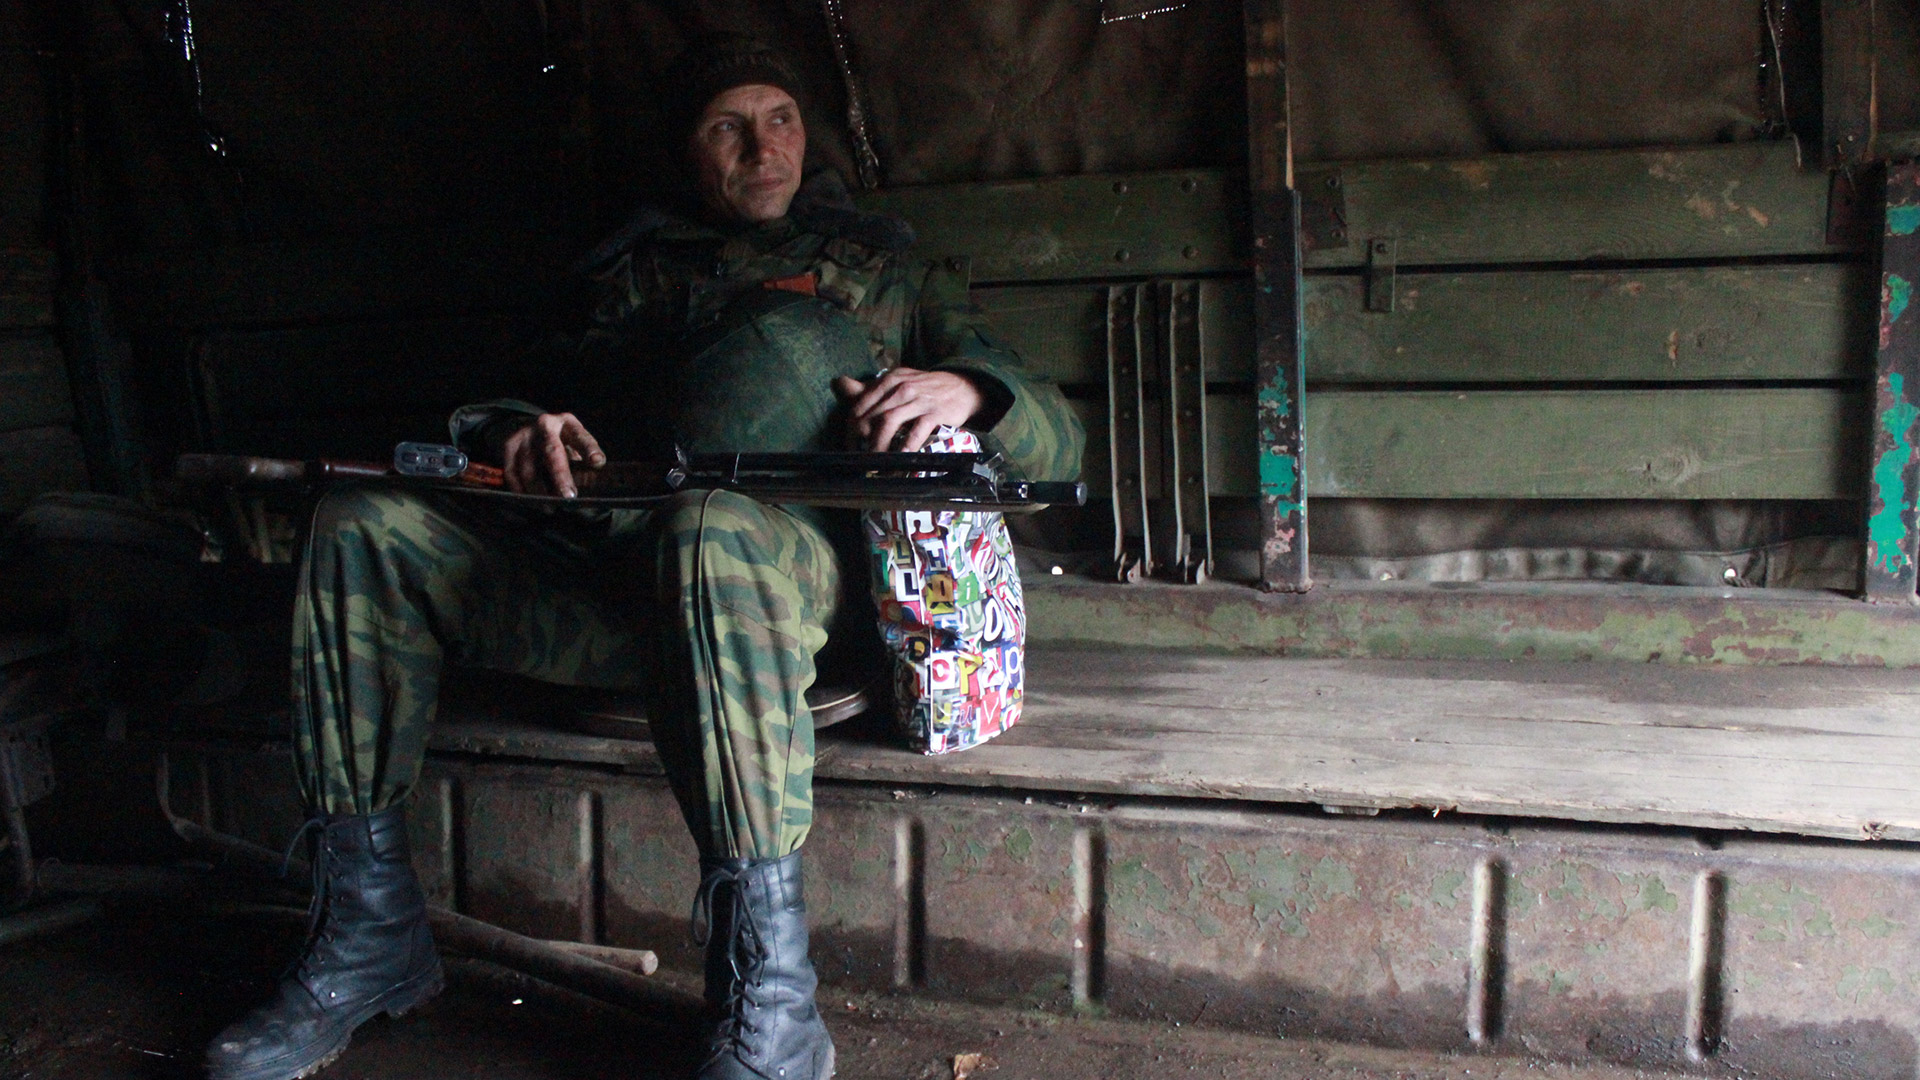 Un soldado separatista pro-ruso camino al frente en Donetsk, la regió oriental de Ucrania que declaró su indendencia unilateral con apoyo de Moscú.